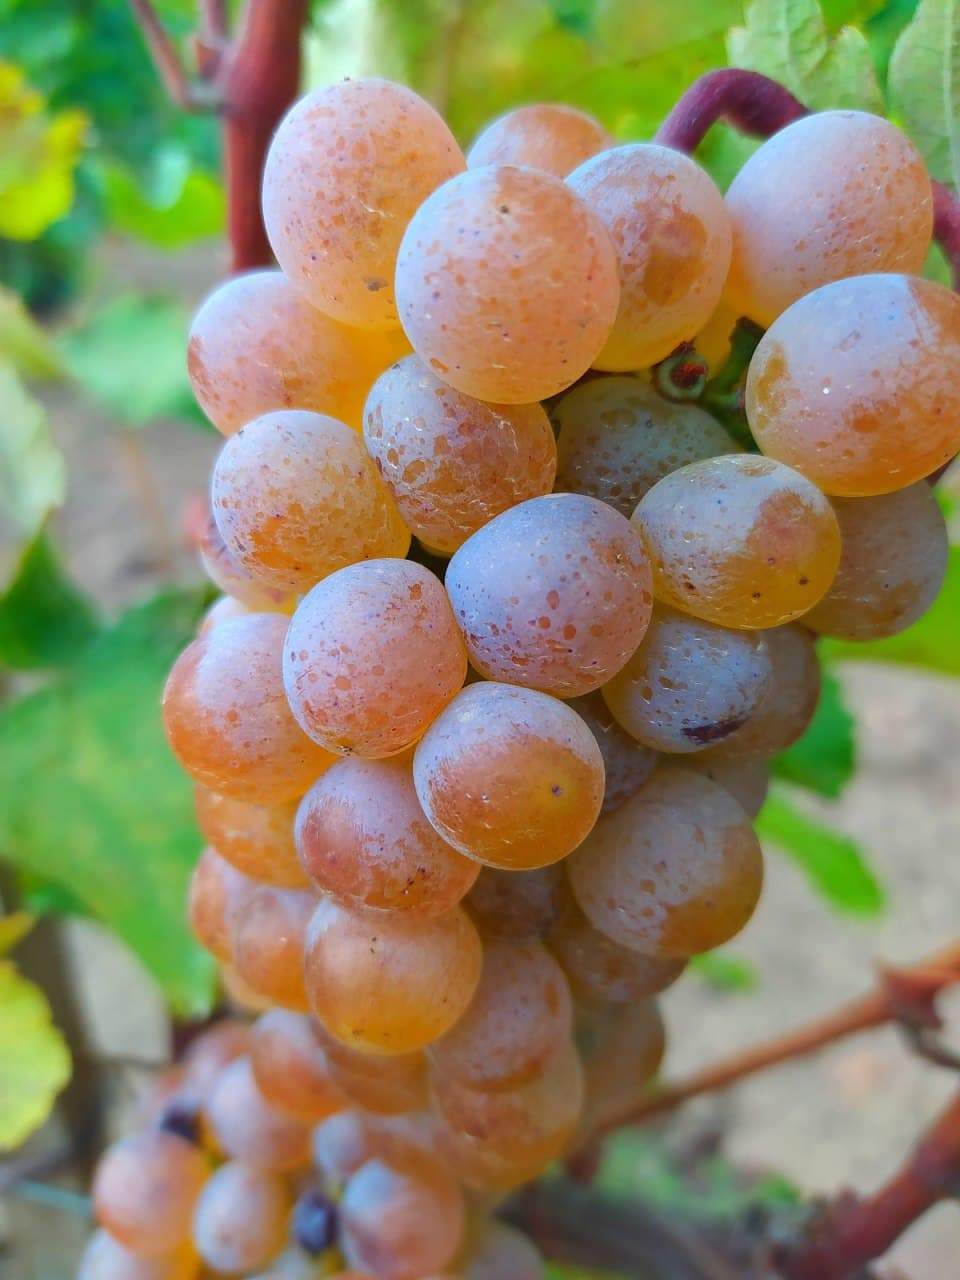 Лозам сорта Ркацители в SHABO 40 лет, они дают прекрасный виноград, из которого делают особые вина